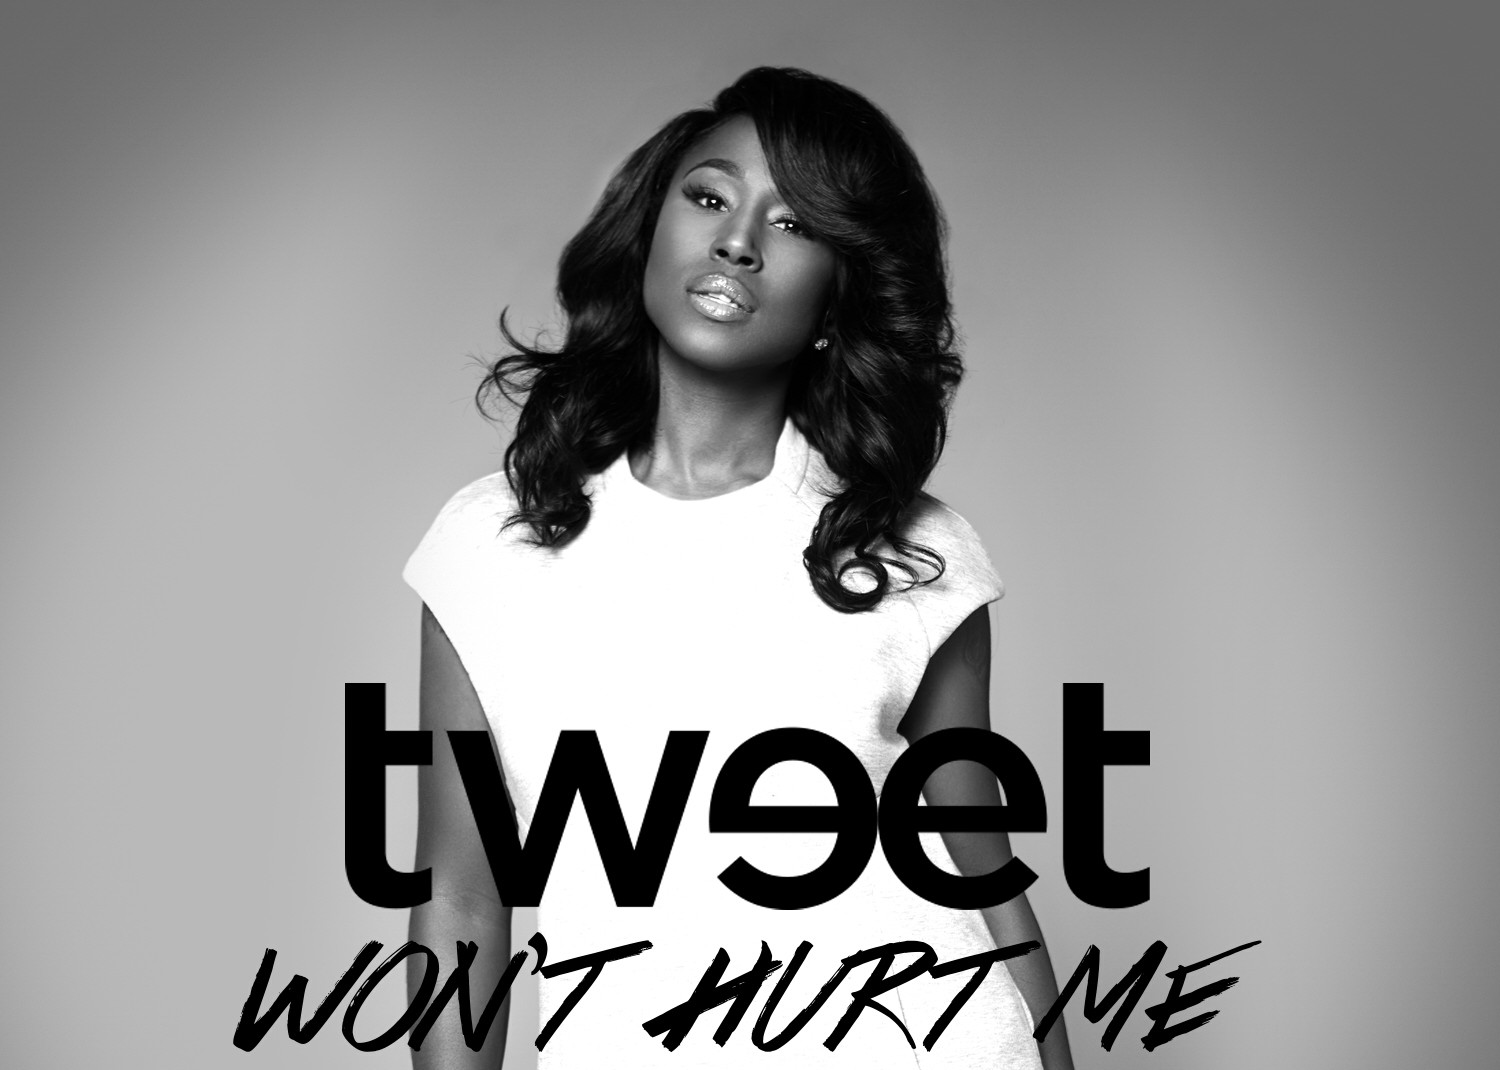 Tweet-Won’t Hurt Me_edit